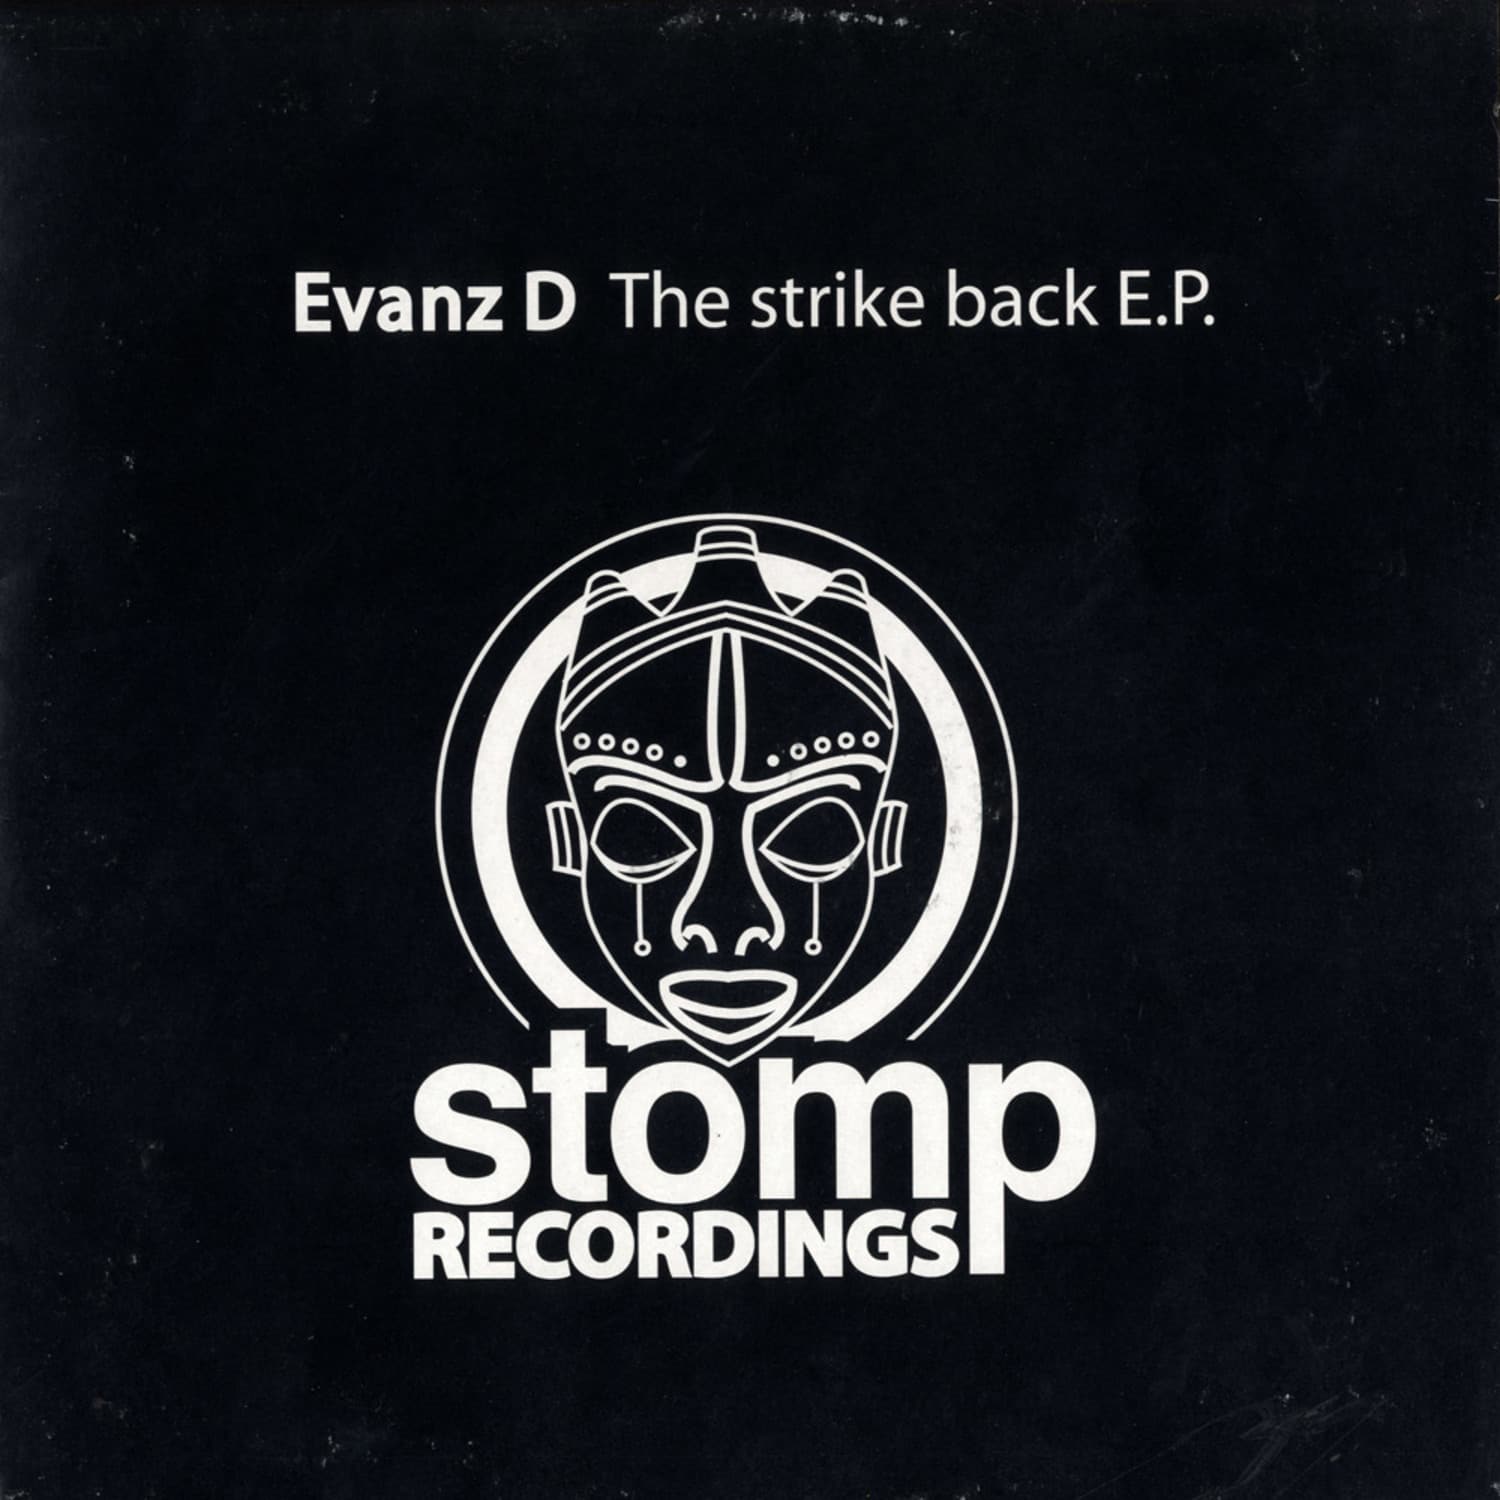 Evanz D - THE STRIKE BACK E.P.